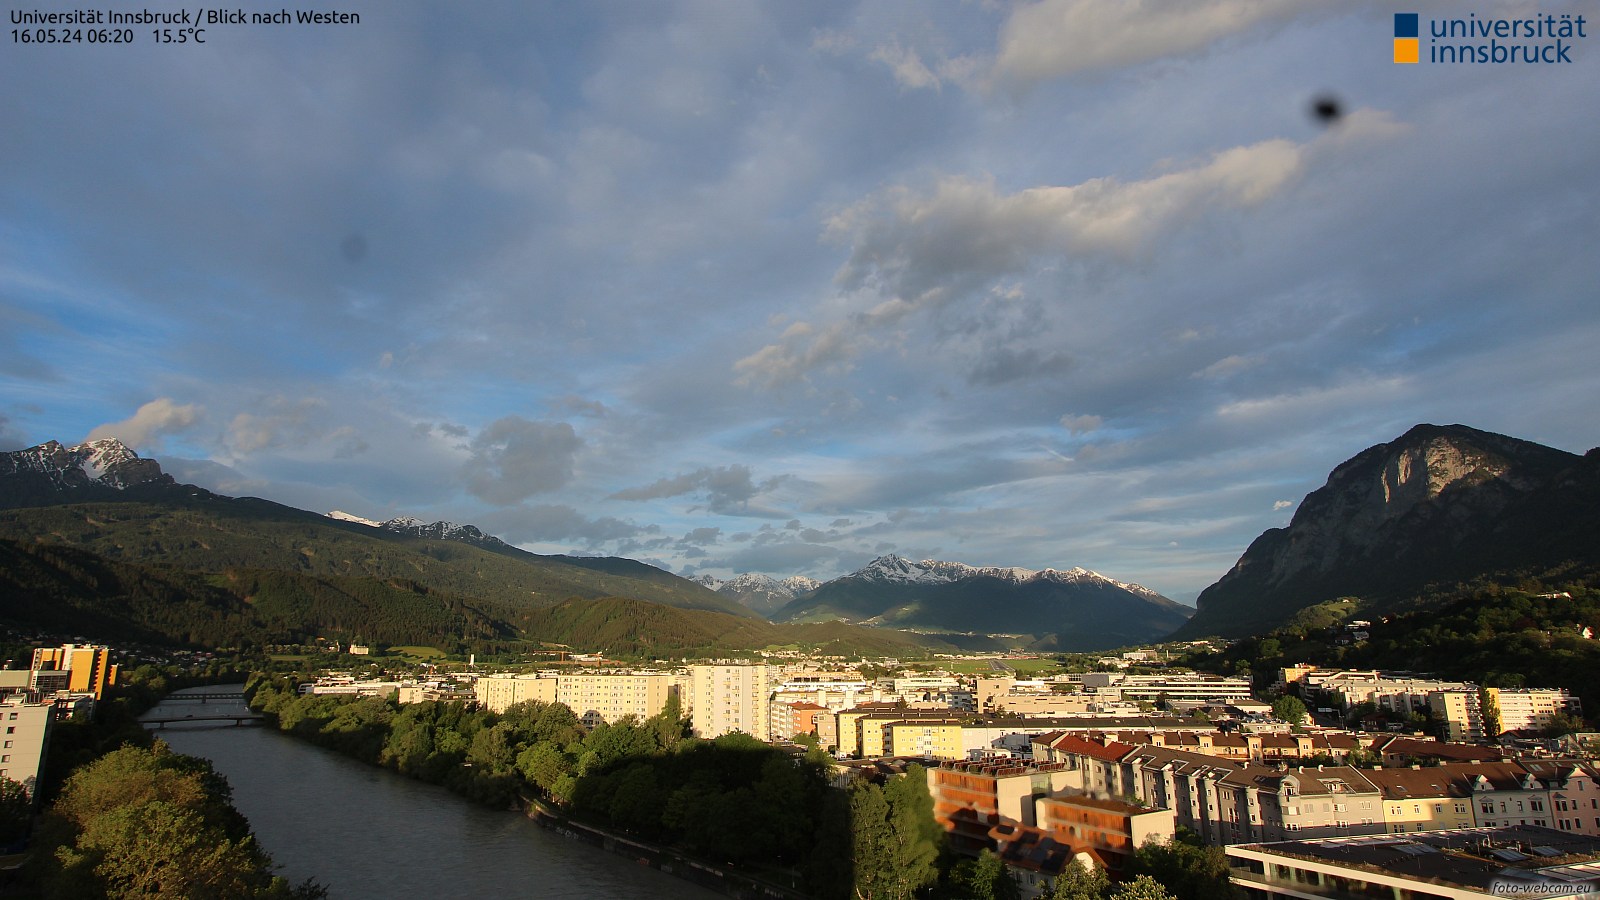 Innsbruck Richtung Westen, Standort Uni Innsbruck, Quelle: foto-webcam.eu